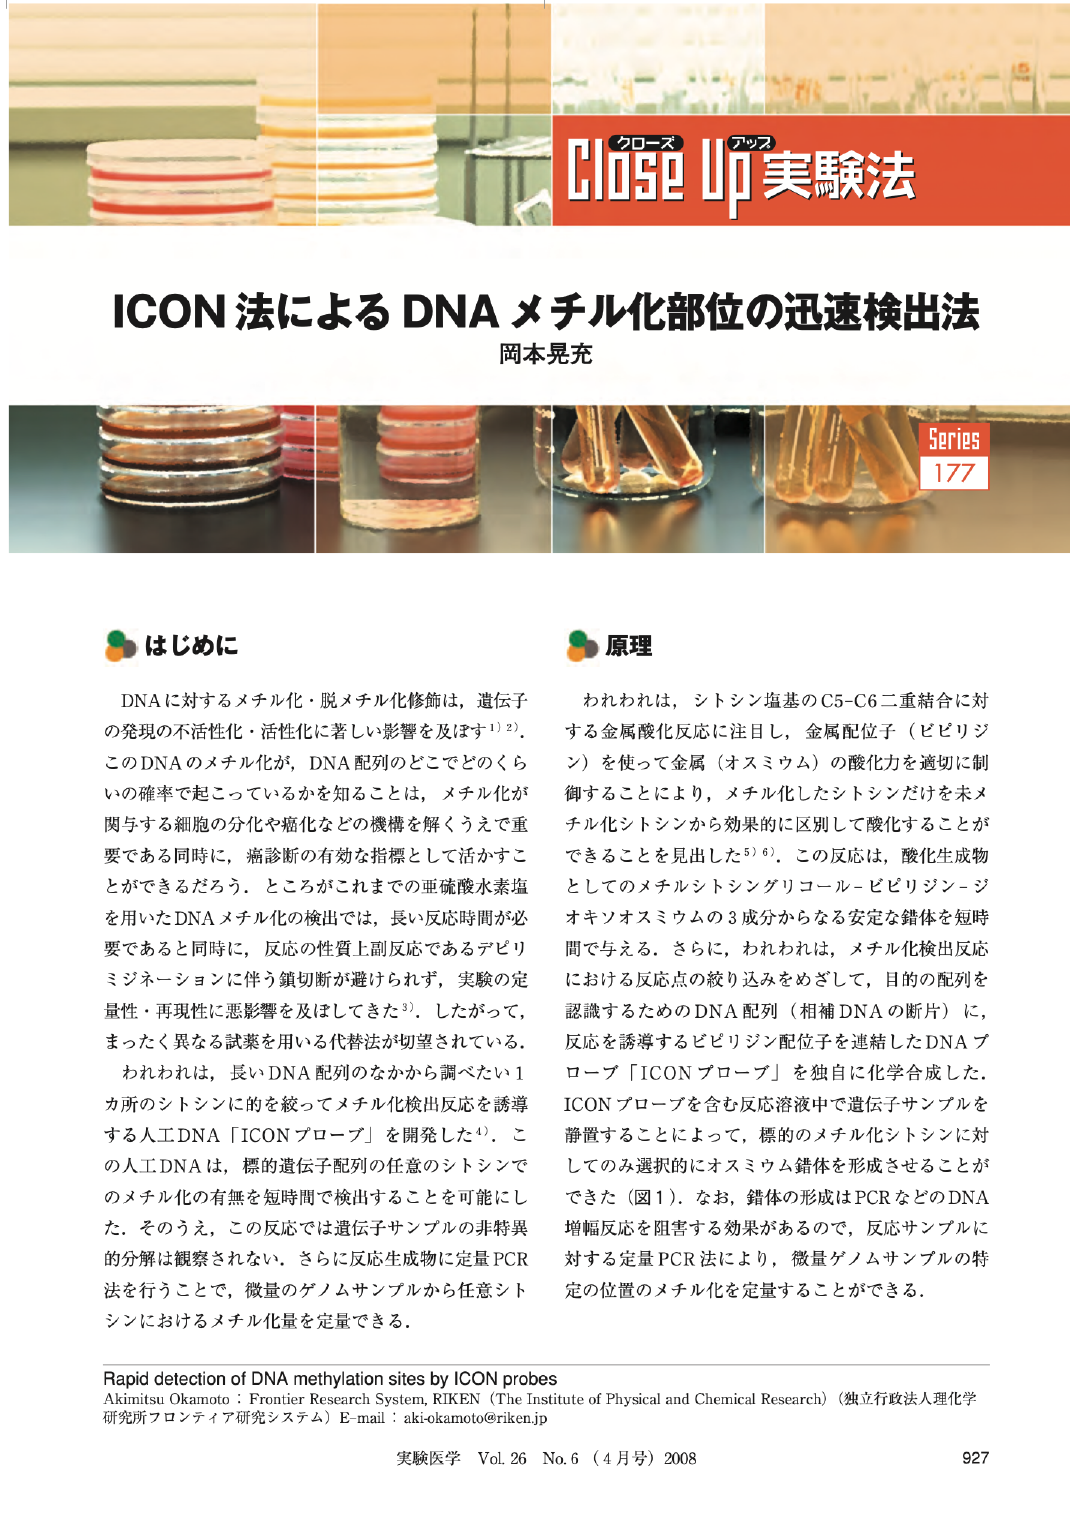 ICON法によるDNAメチル化部位の迅速検出法